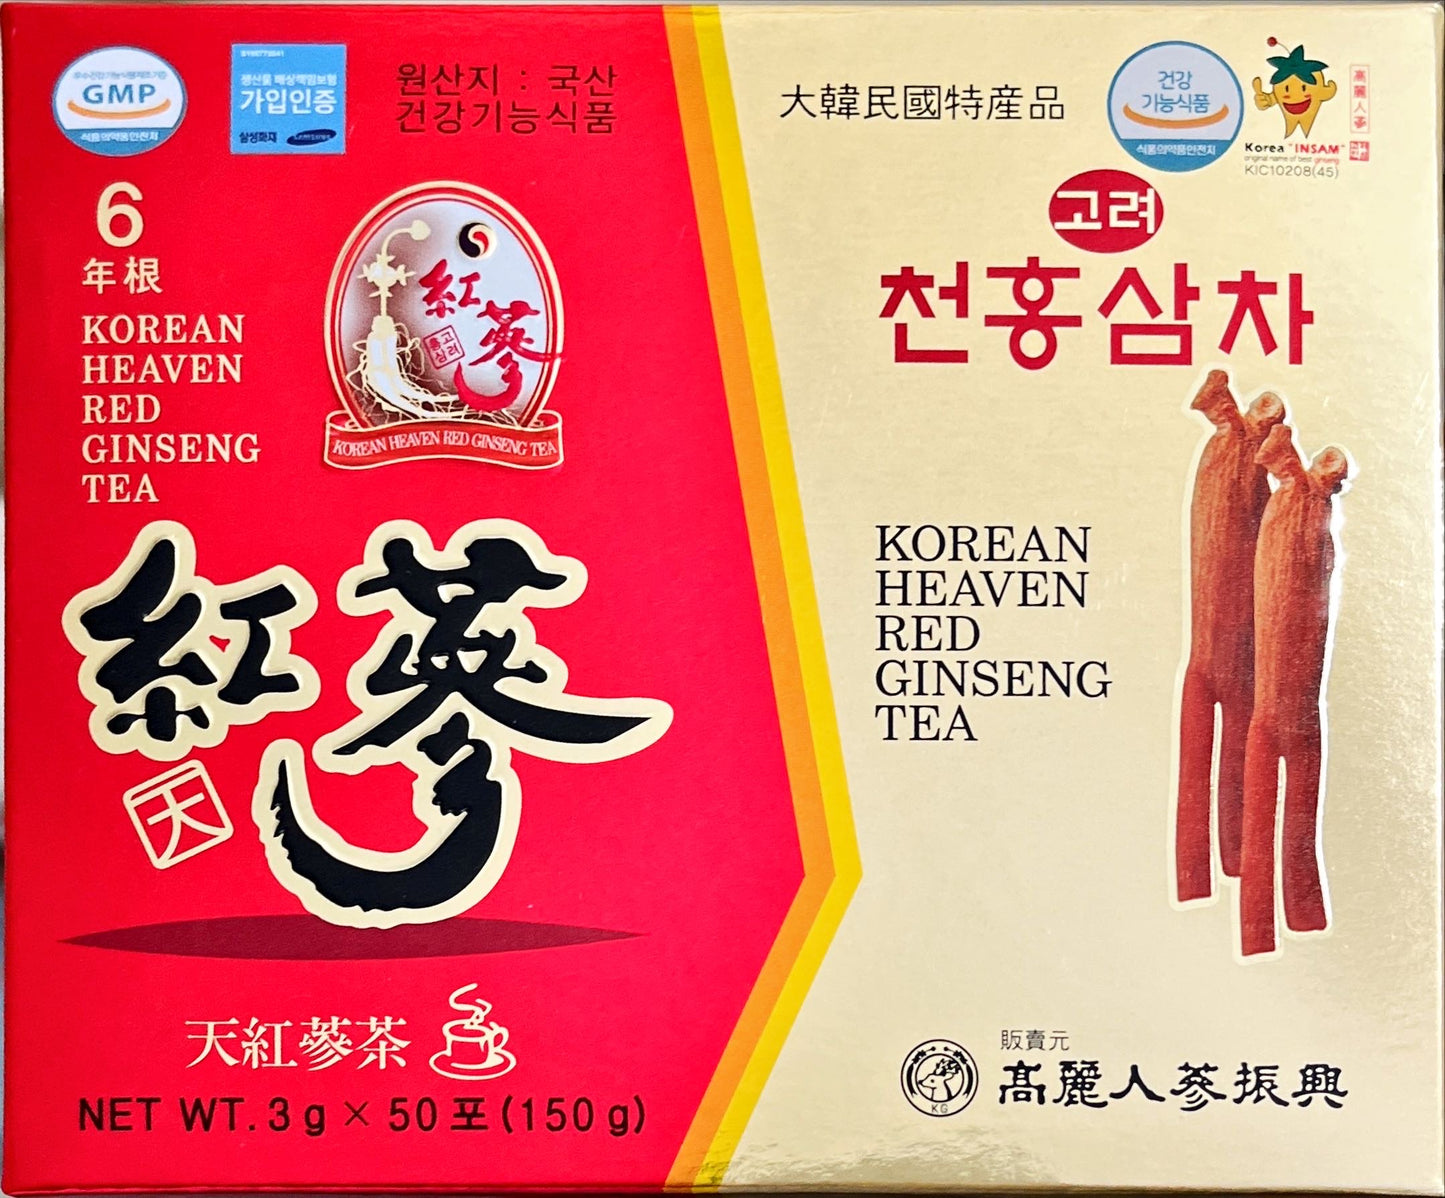 6YEARS KOREAN RED GINSENG TEA GINSENG SAPONIN GINSENOSIDE NATURAL SUPER FOOD (3g x 50 Sachets)